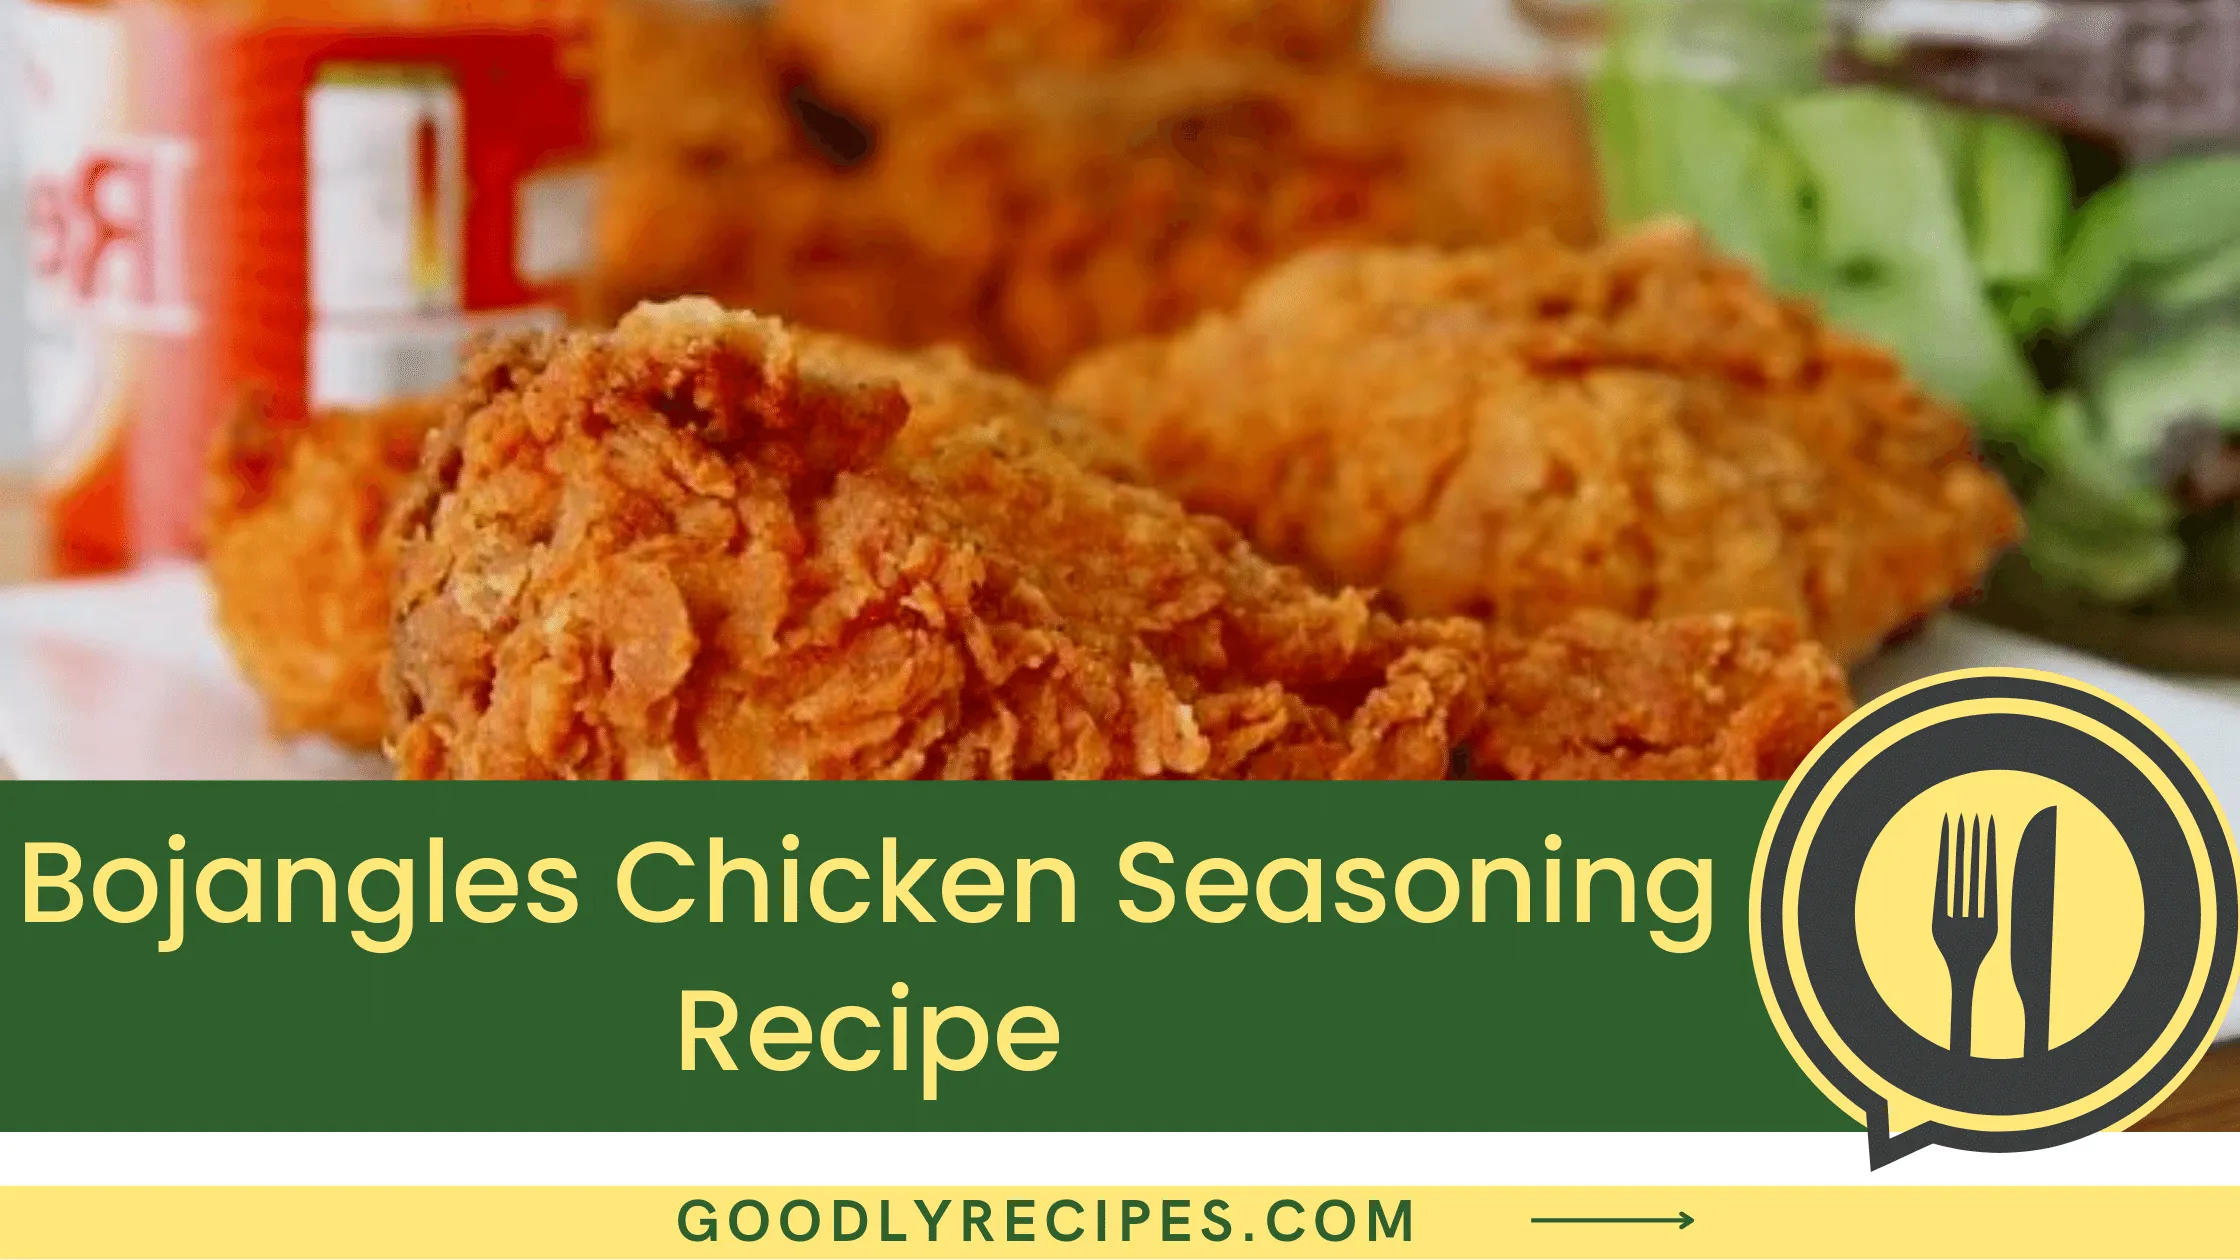 Bojangles Chicken Seasoning Recipe - For Food Lovers